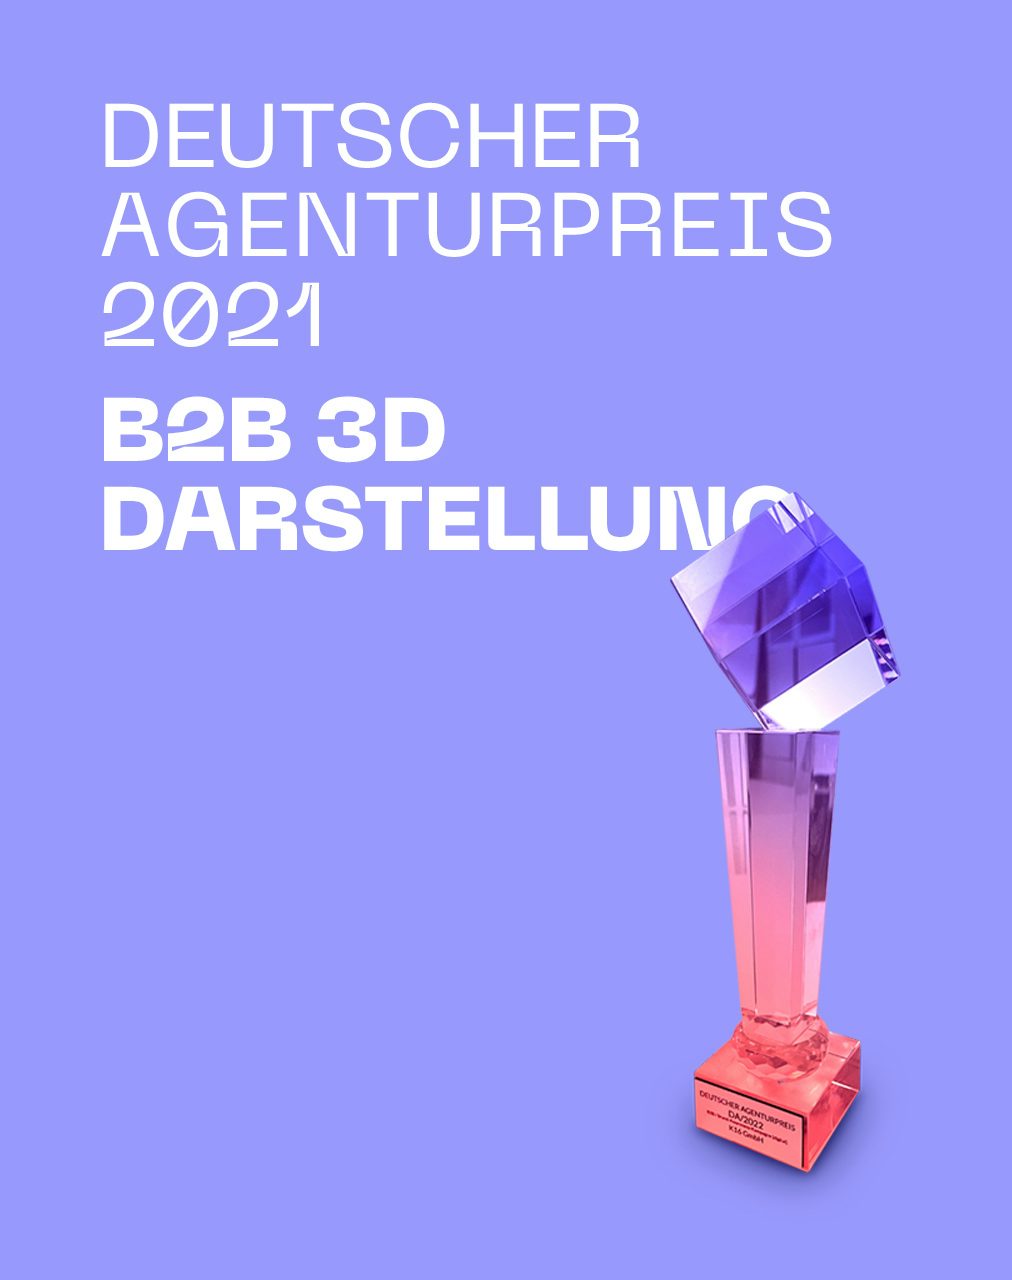 Deutscher Agenturpreis 2021 für B2B 3D Darstellung